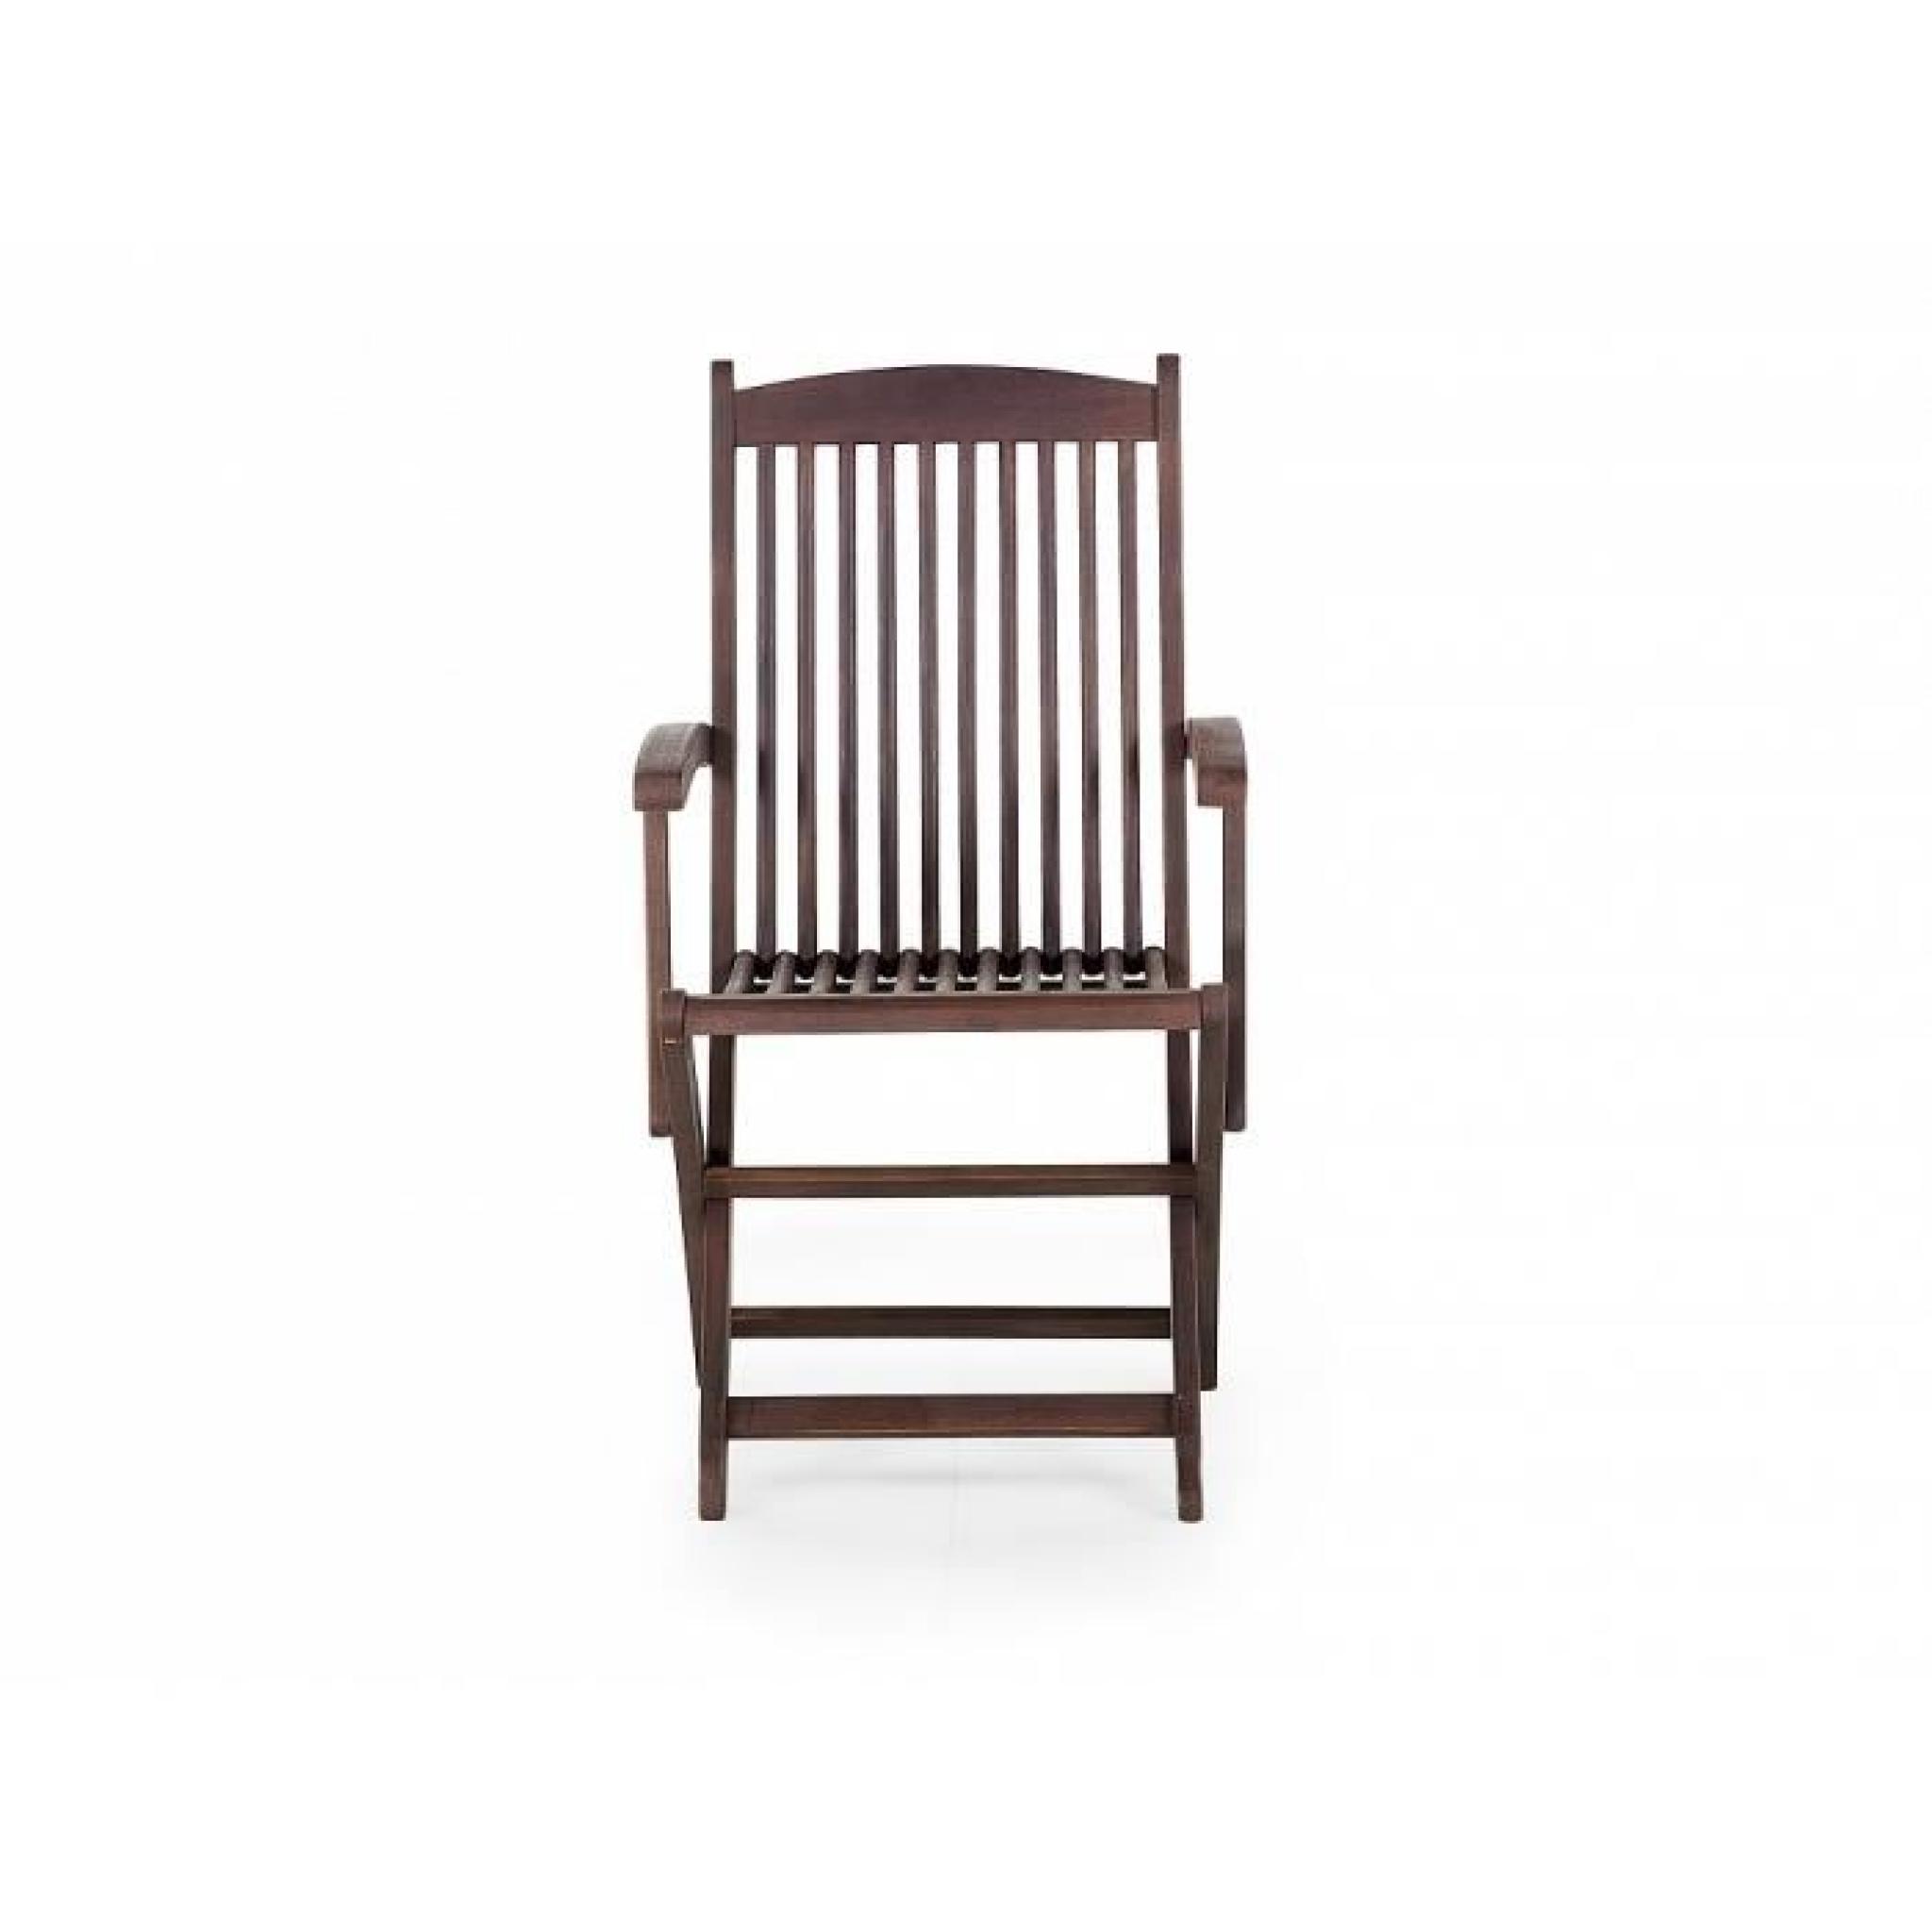 Table ovale et 6 chaises de jardin en bois teinté - Maui pas cher